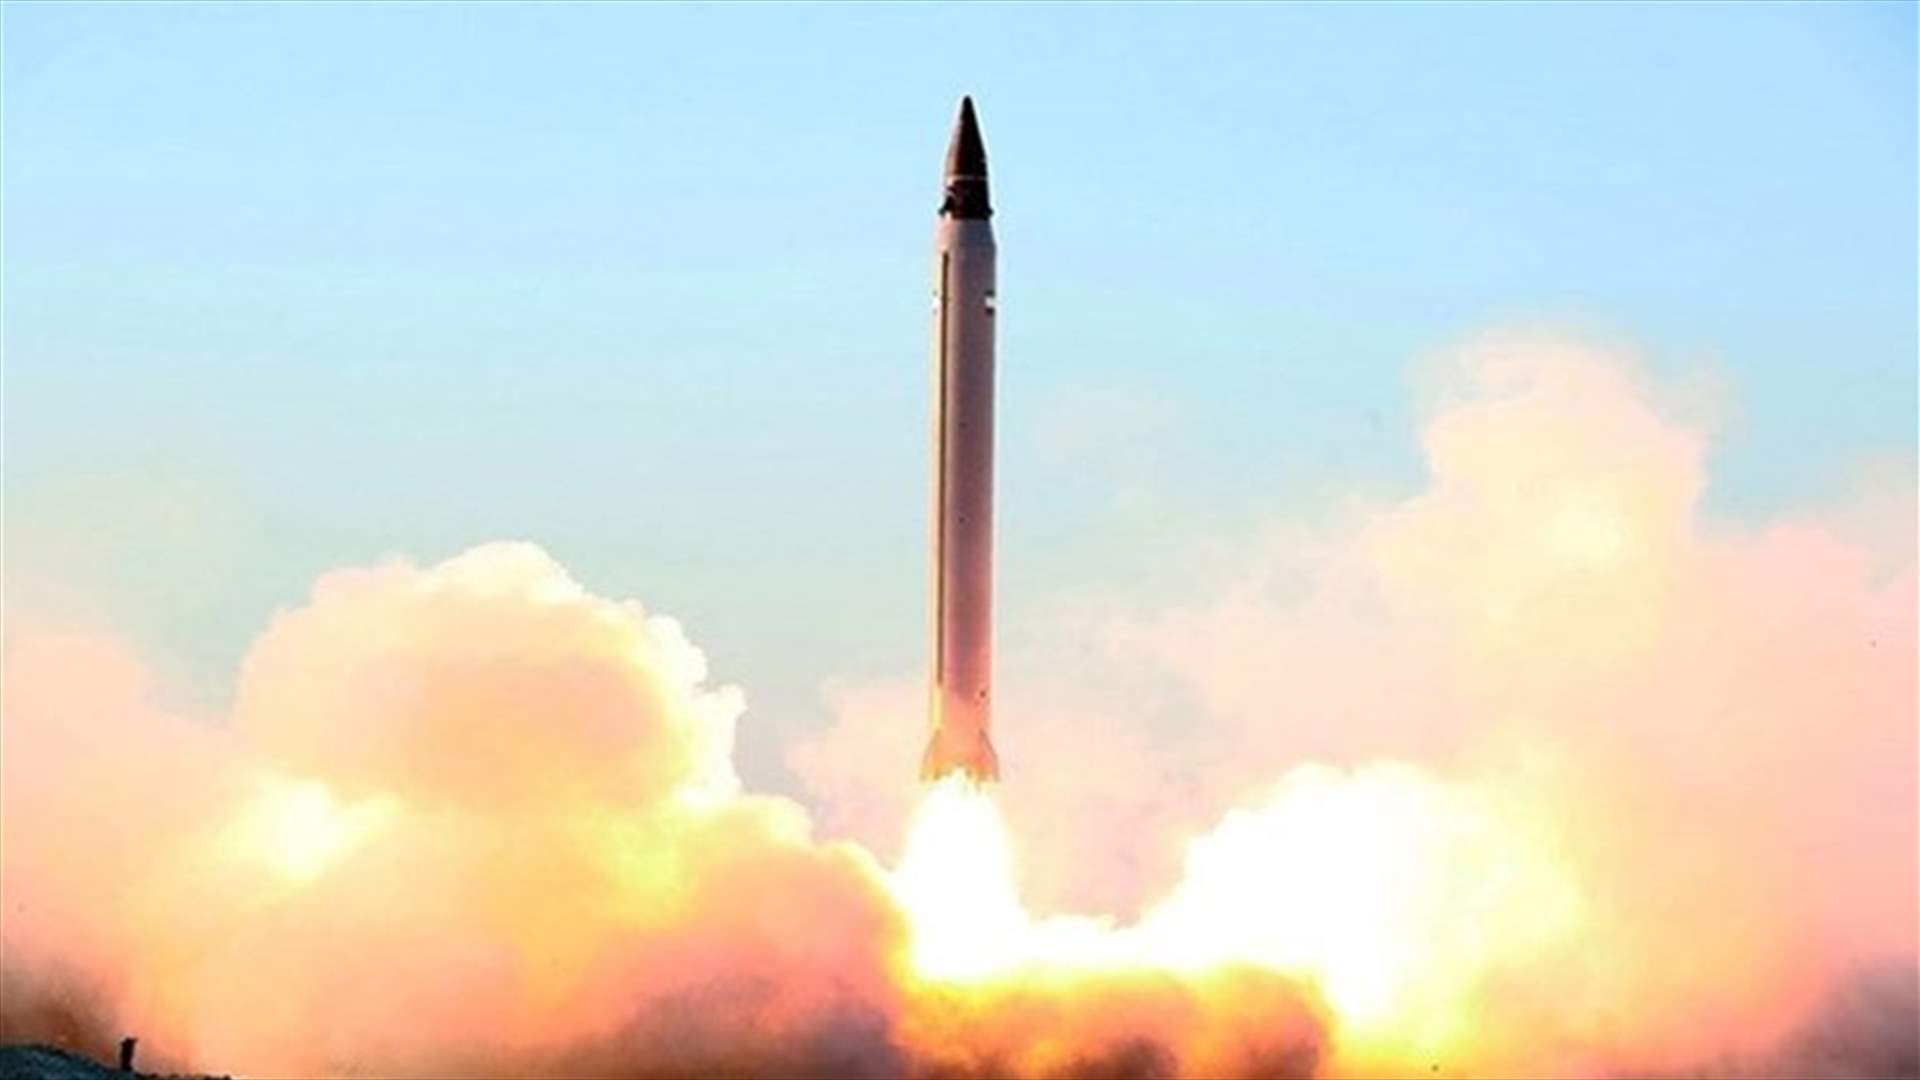 مجلس الأمن يدين التجارب الصاروخية لكوريا الشمالية...ويتعهد باتخاذ تدابير جديدة